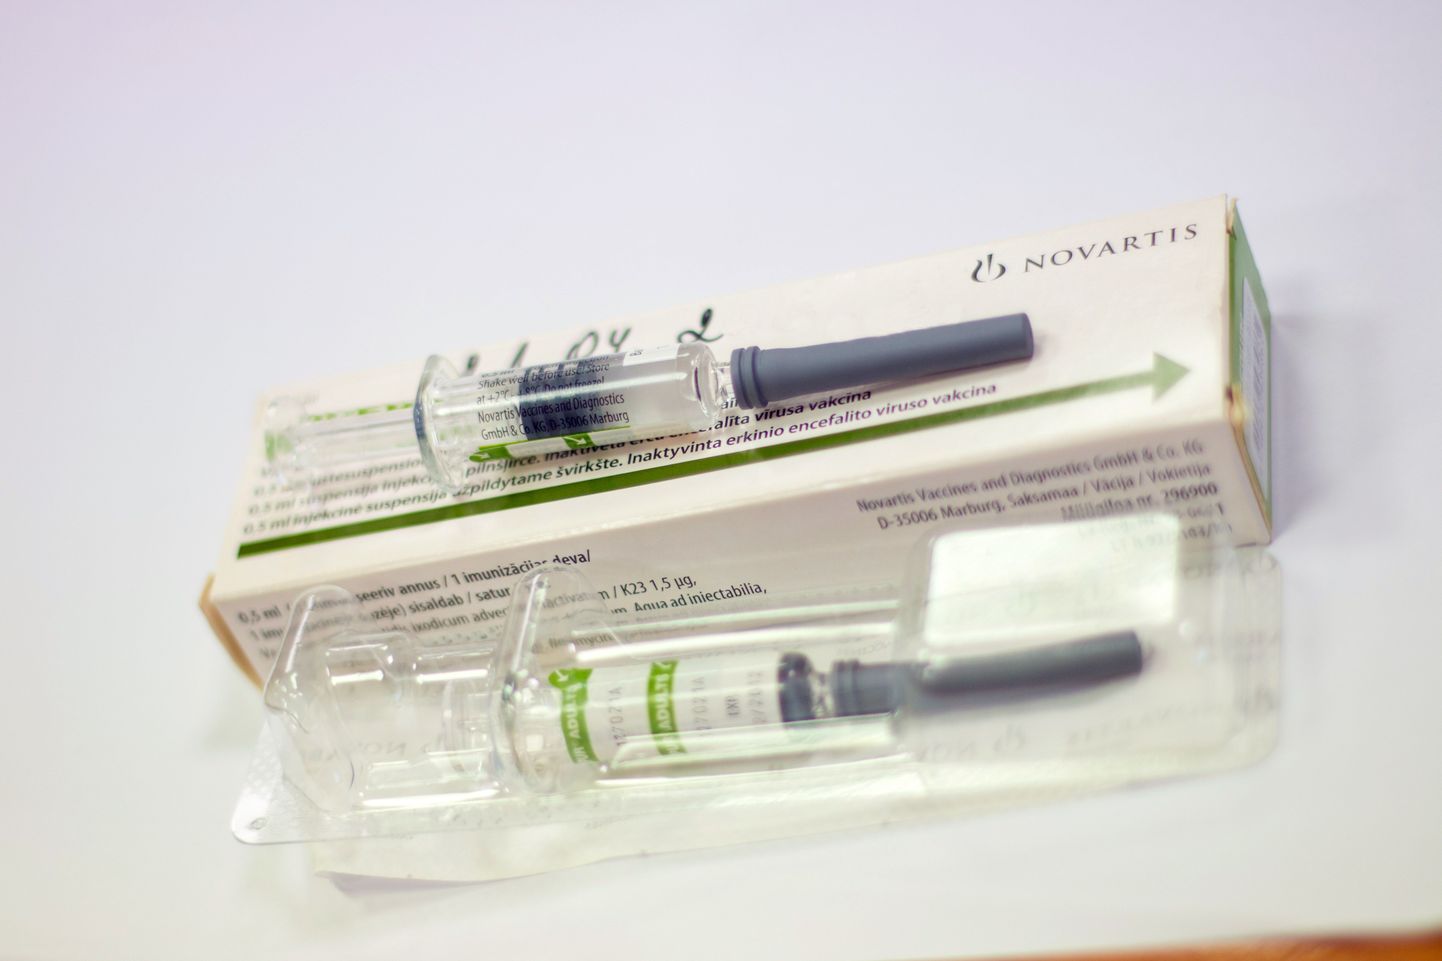 Puukentsefaliidi vastane vaktsineerimine käib kolmes etapis. Esimesele süstile järgneb kuu möödudes teine ning aasta pärast kolmas. Pärast seda vajab inimene vaktsiini iga kolme aasta tagant. Üks süst maksab umbes 27 eurot.